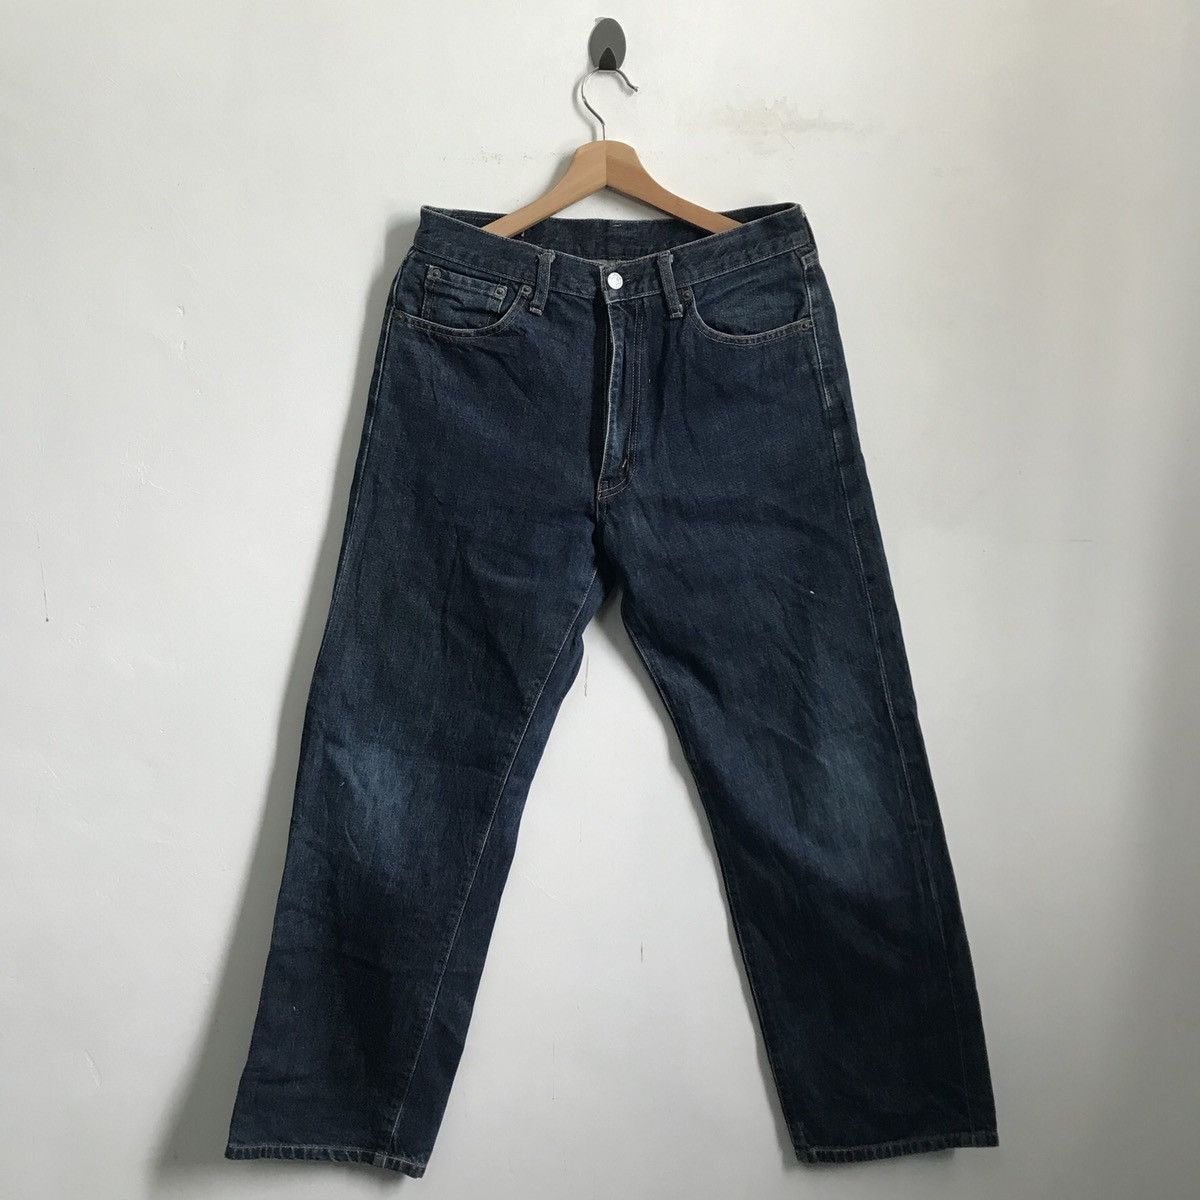 Vintage Bobson 511 Jeans Denim | Grailed